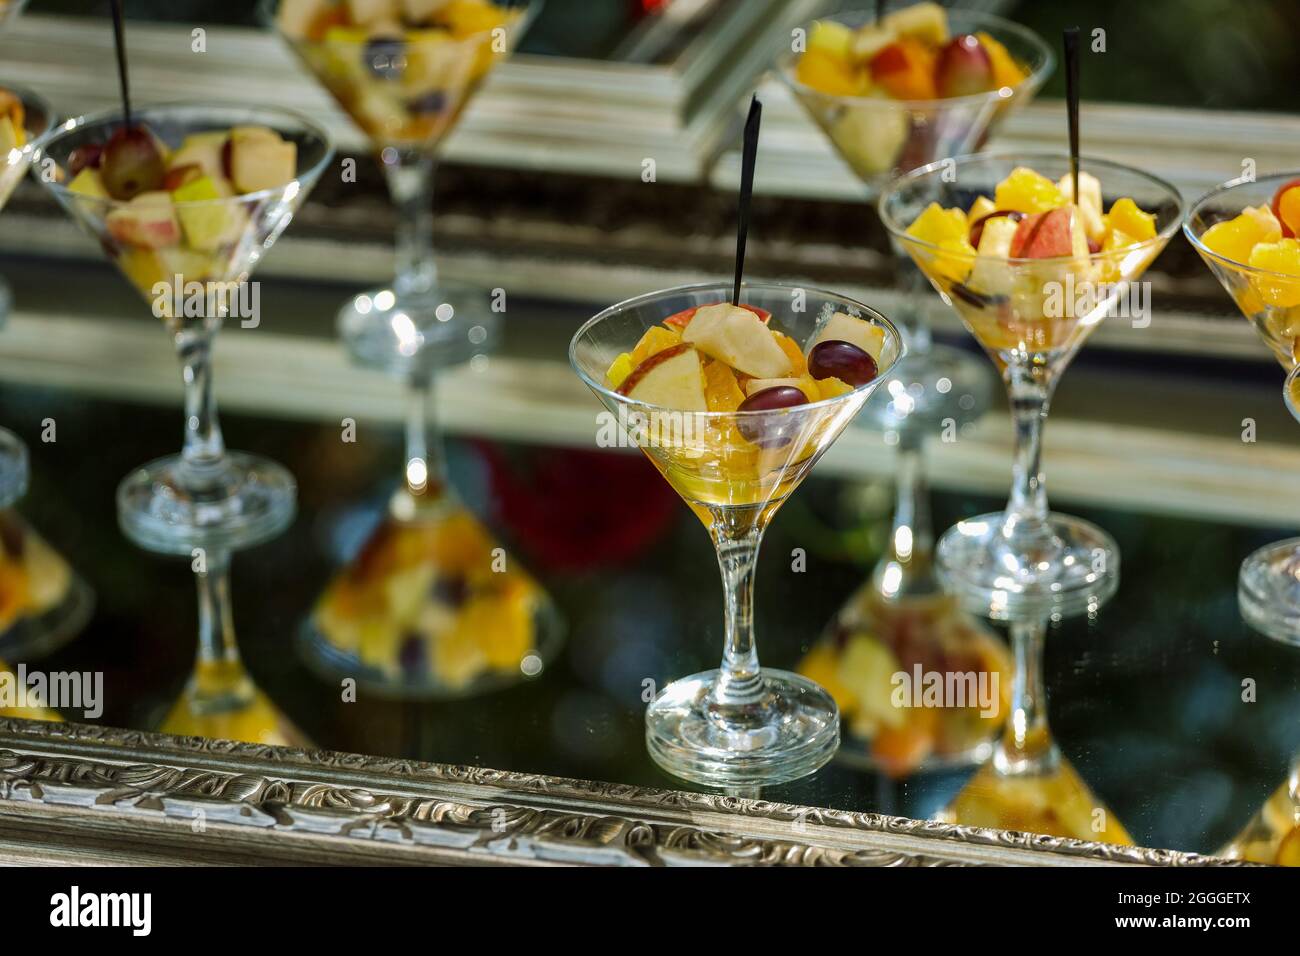 Antipasti, catering, spuntini in vetreria sul vassoio d'argento Foto di alta qualità Foto Stock